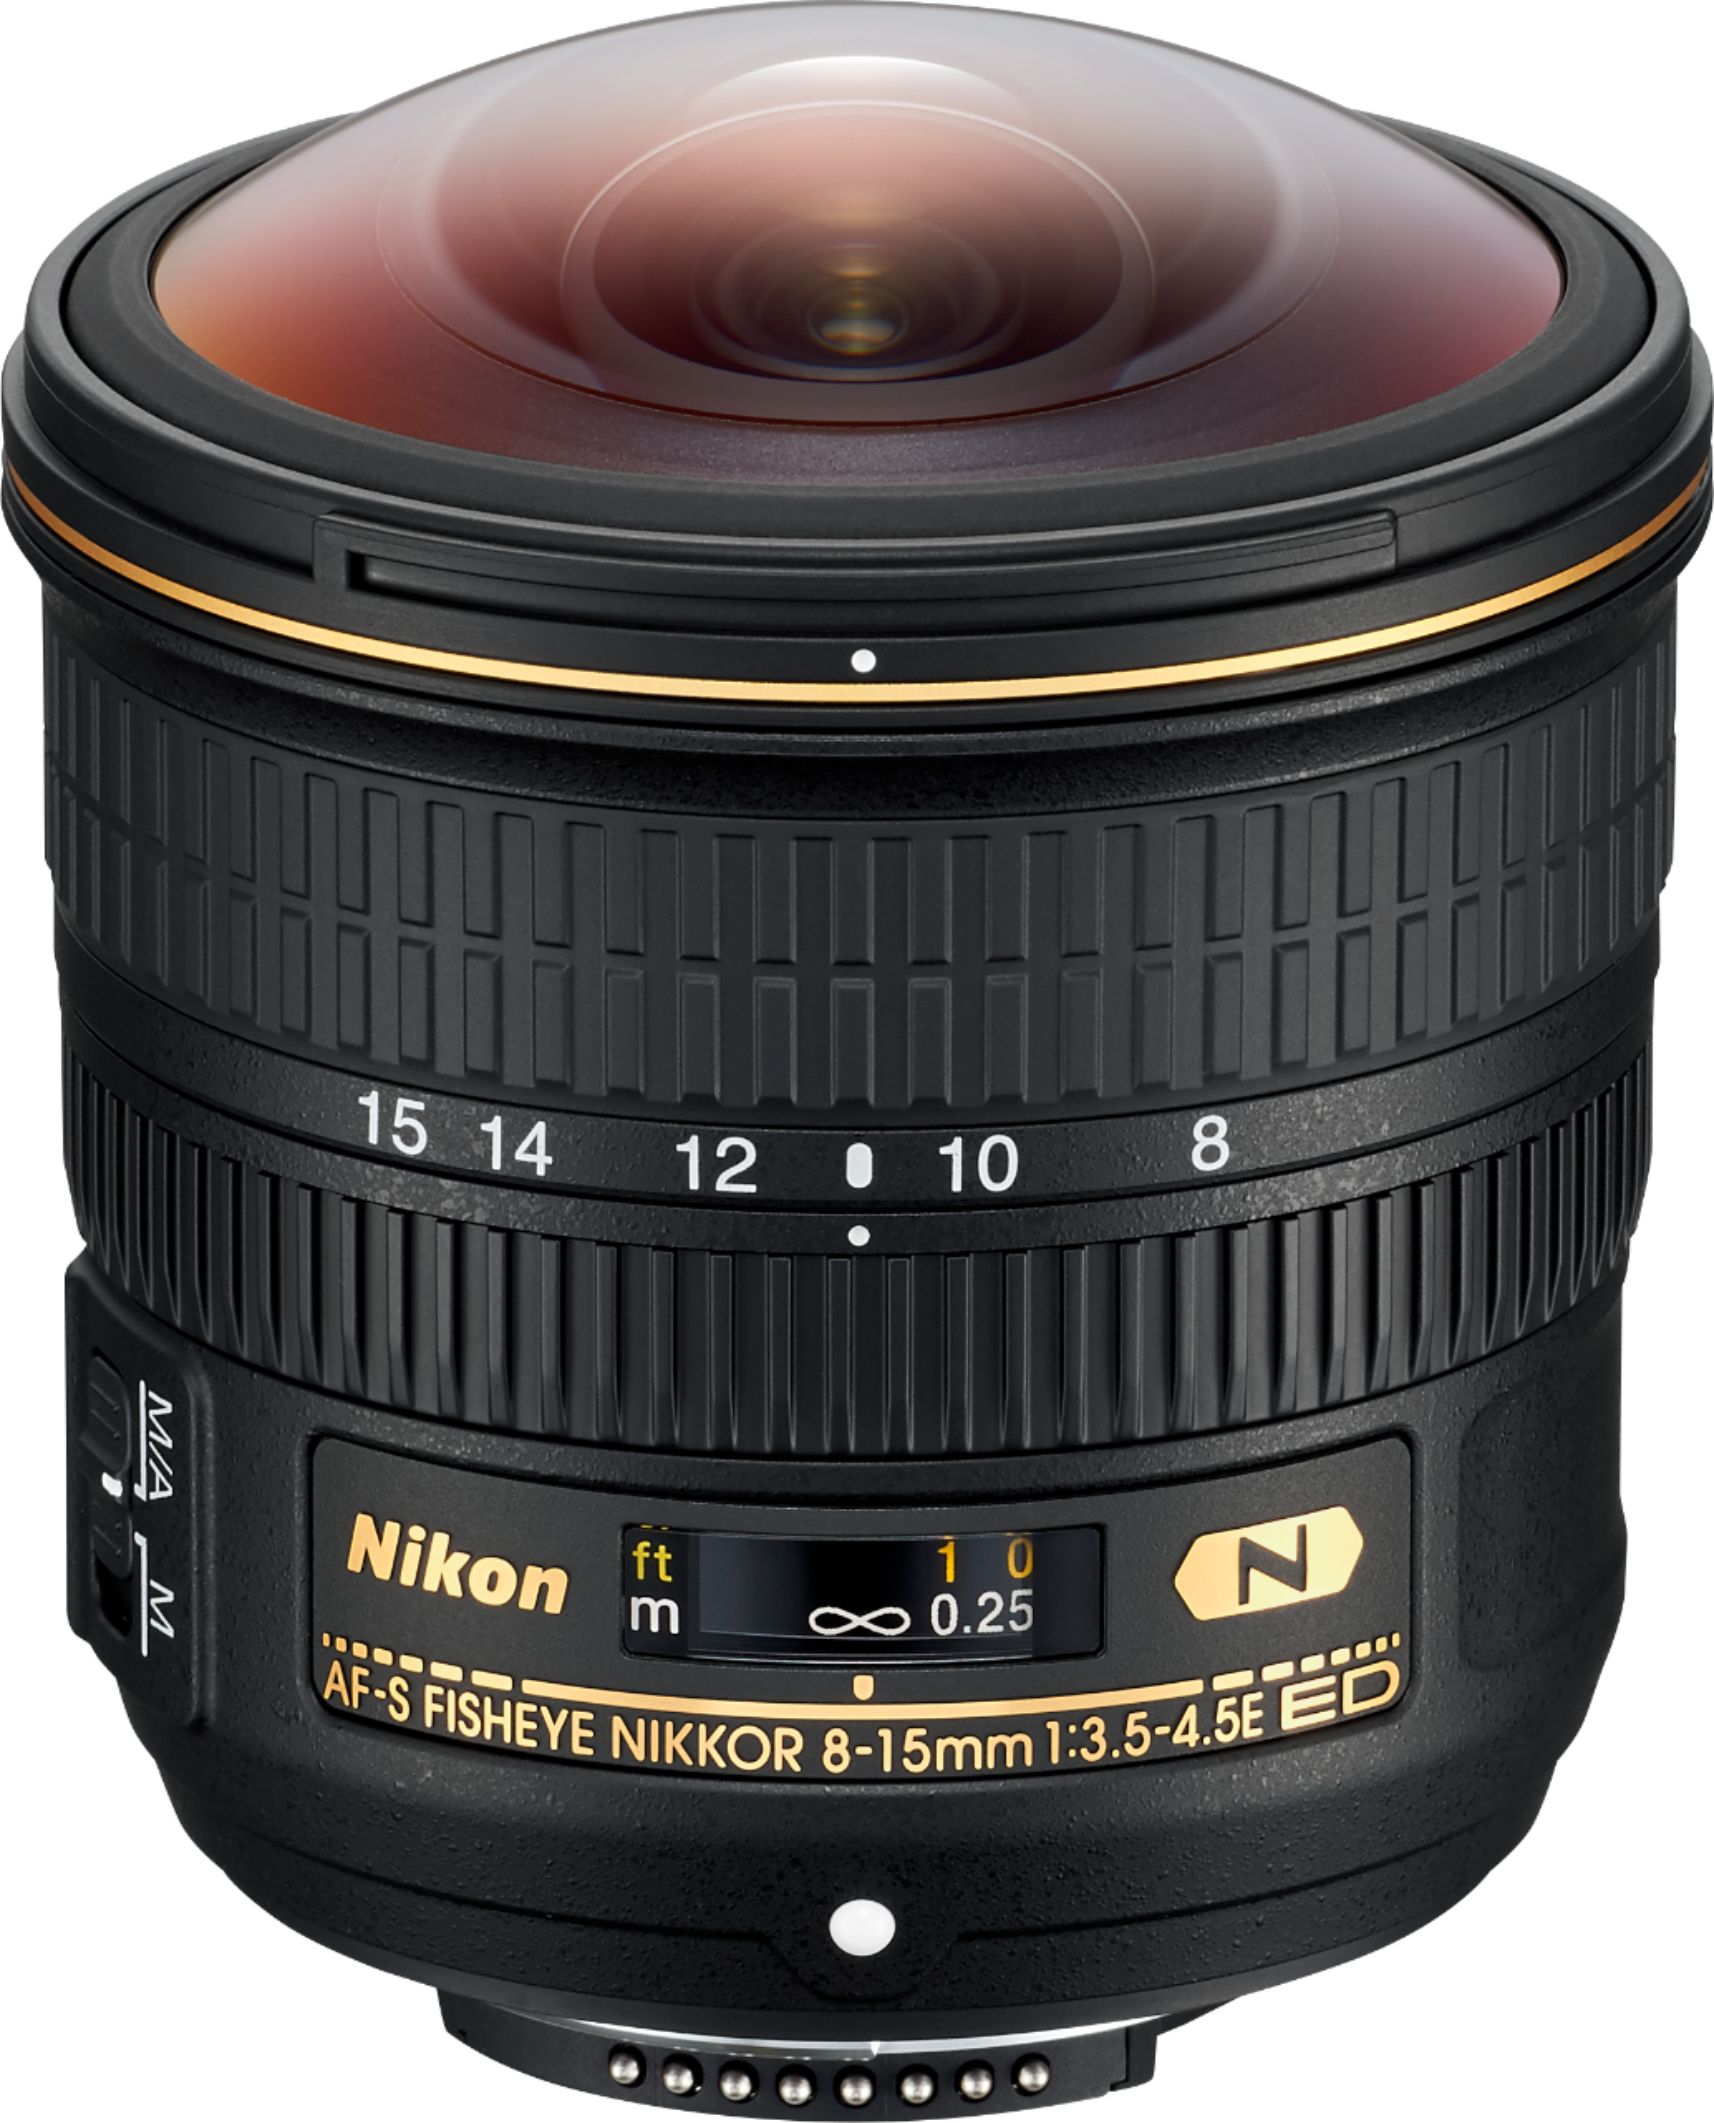 Nikon AFS FisheyeNikkor 815mm f/3.54.5 E ED Fisheye